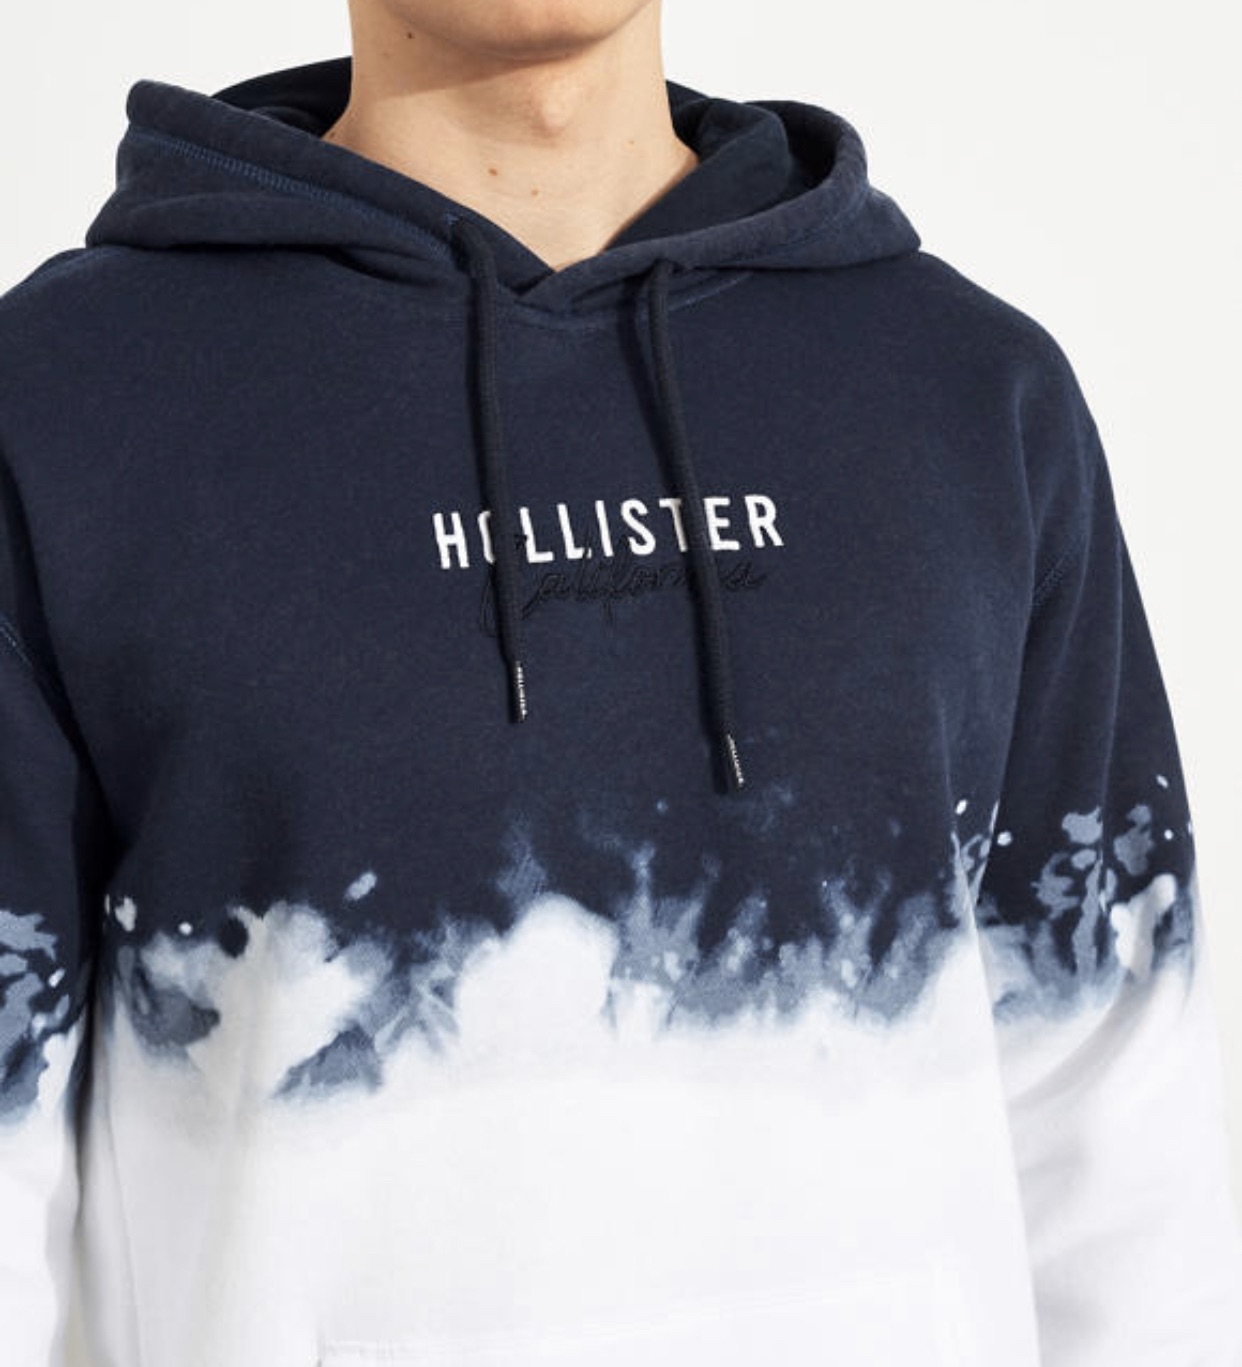 hollister hoodies uk sale